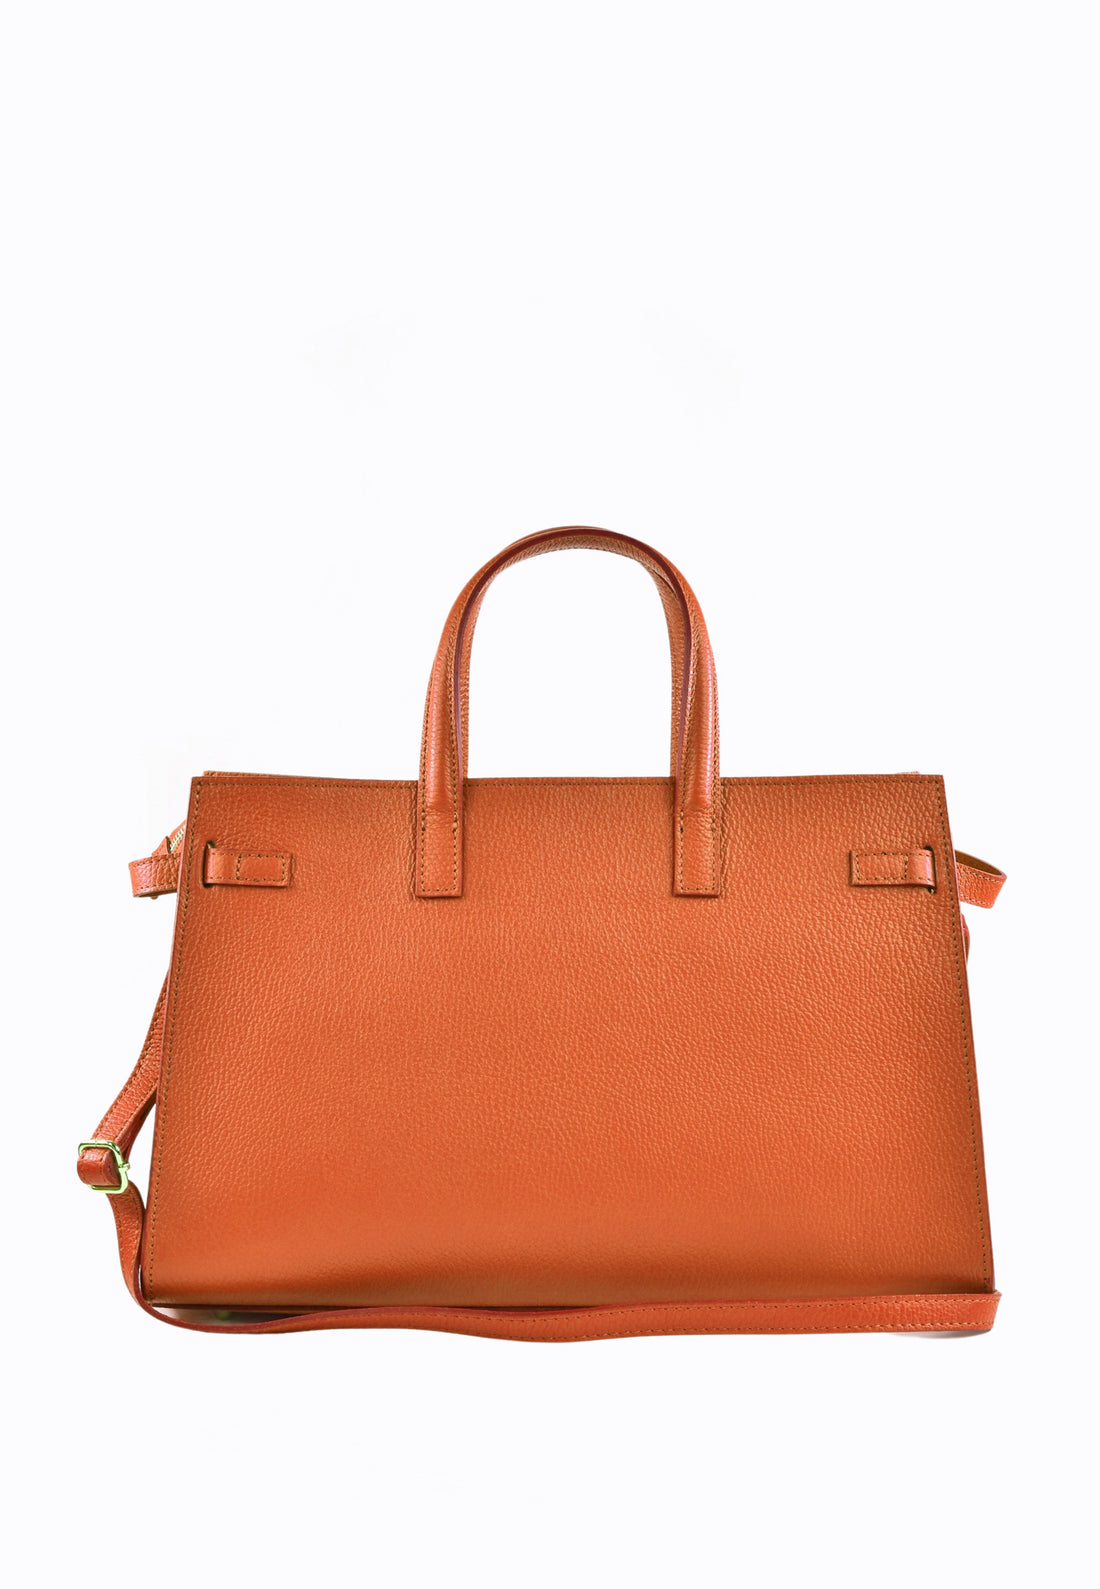 Sveva bag in Orange Dollar leather